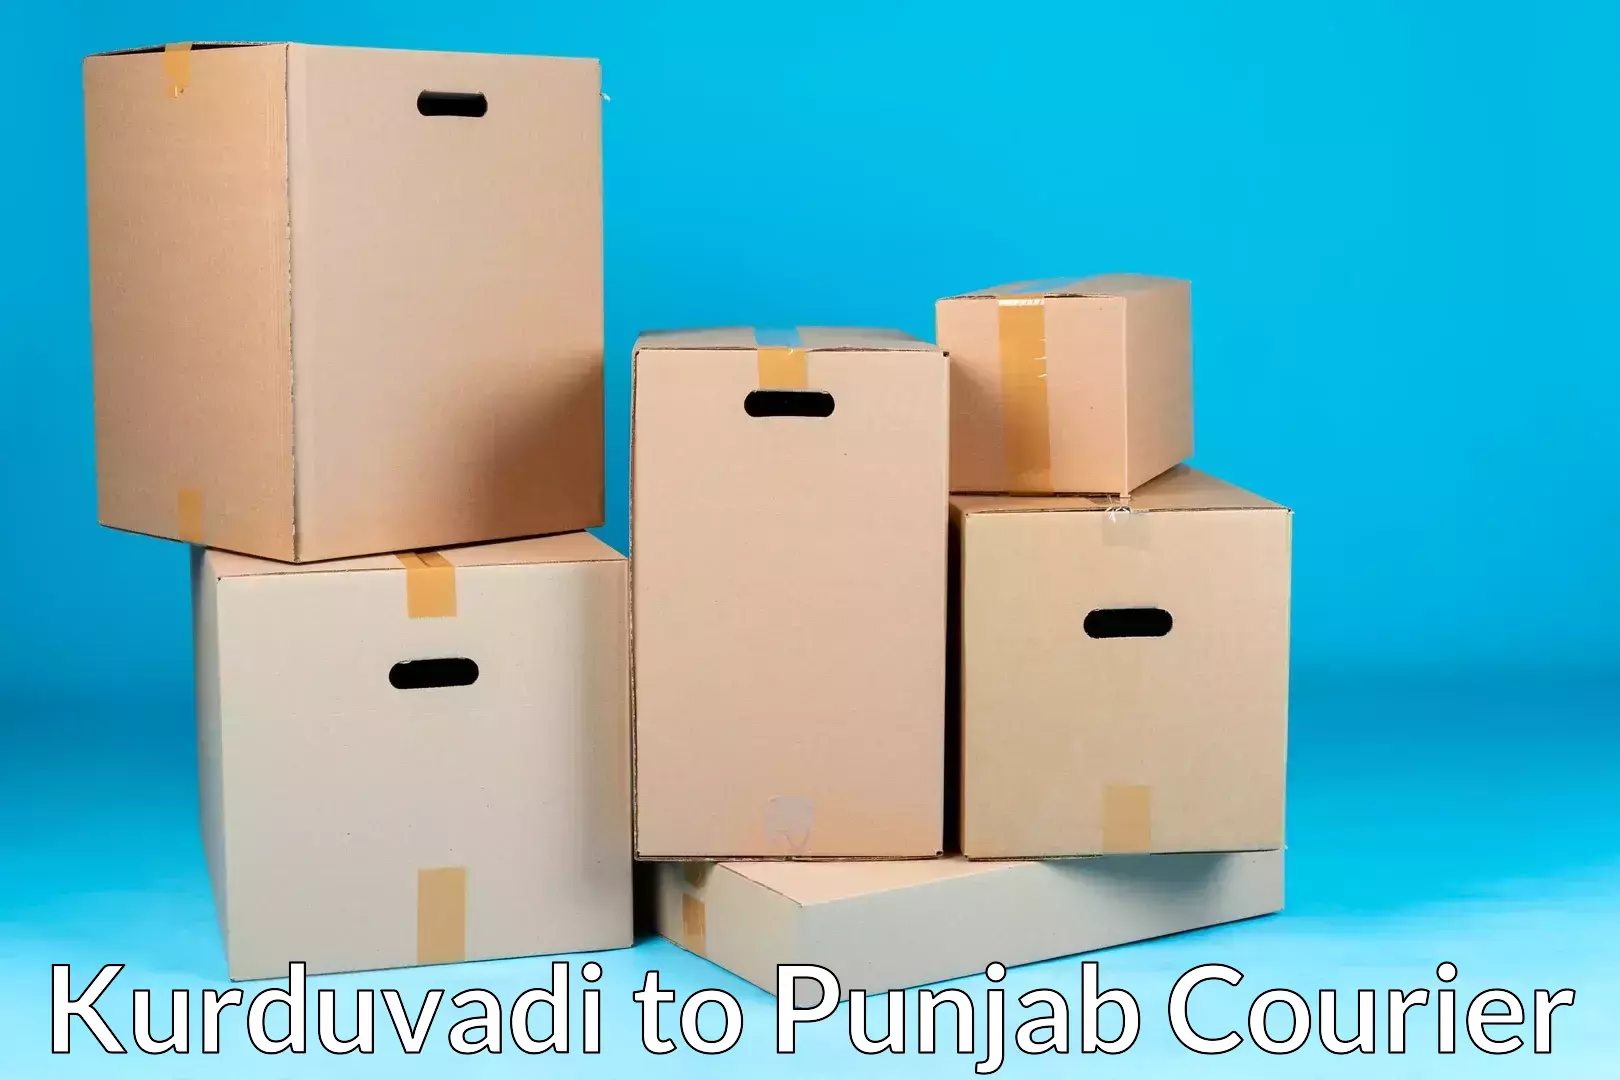 Furniture moving experts Kurduvadi to Ajnala